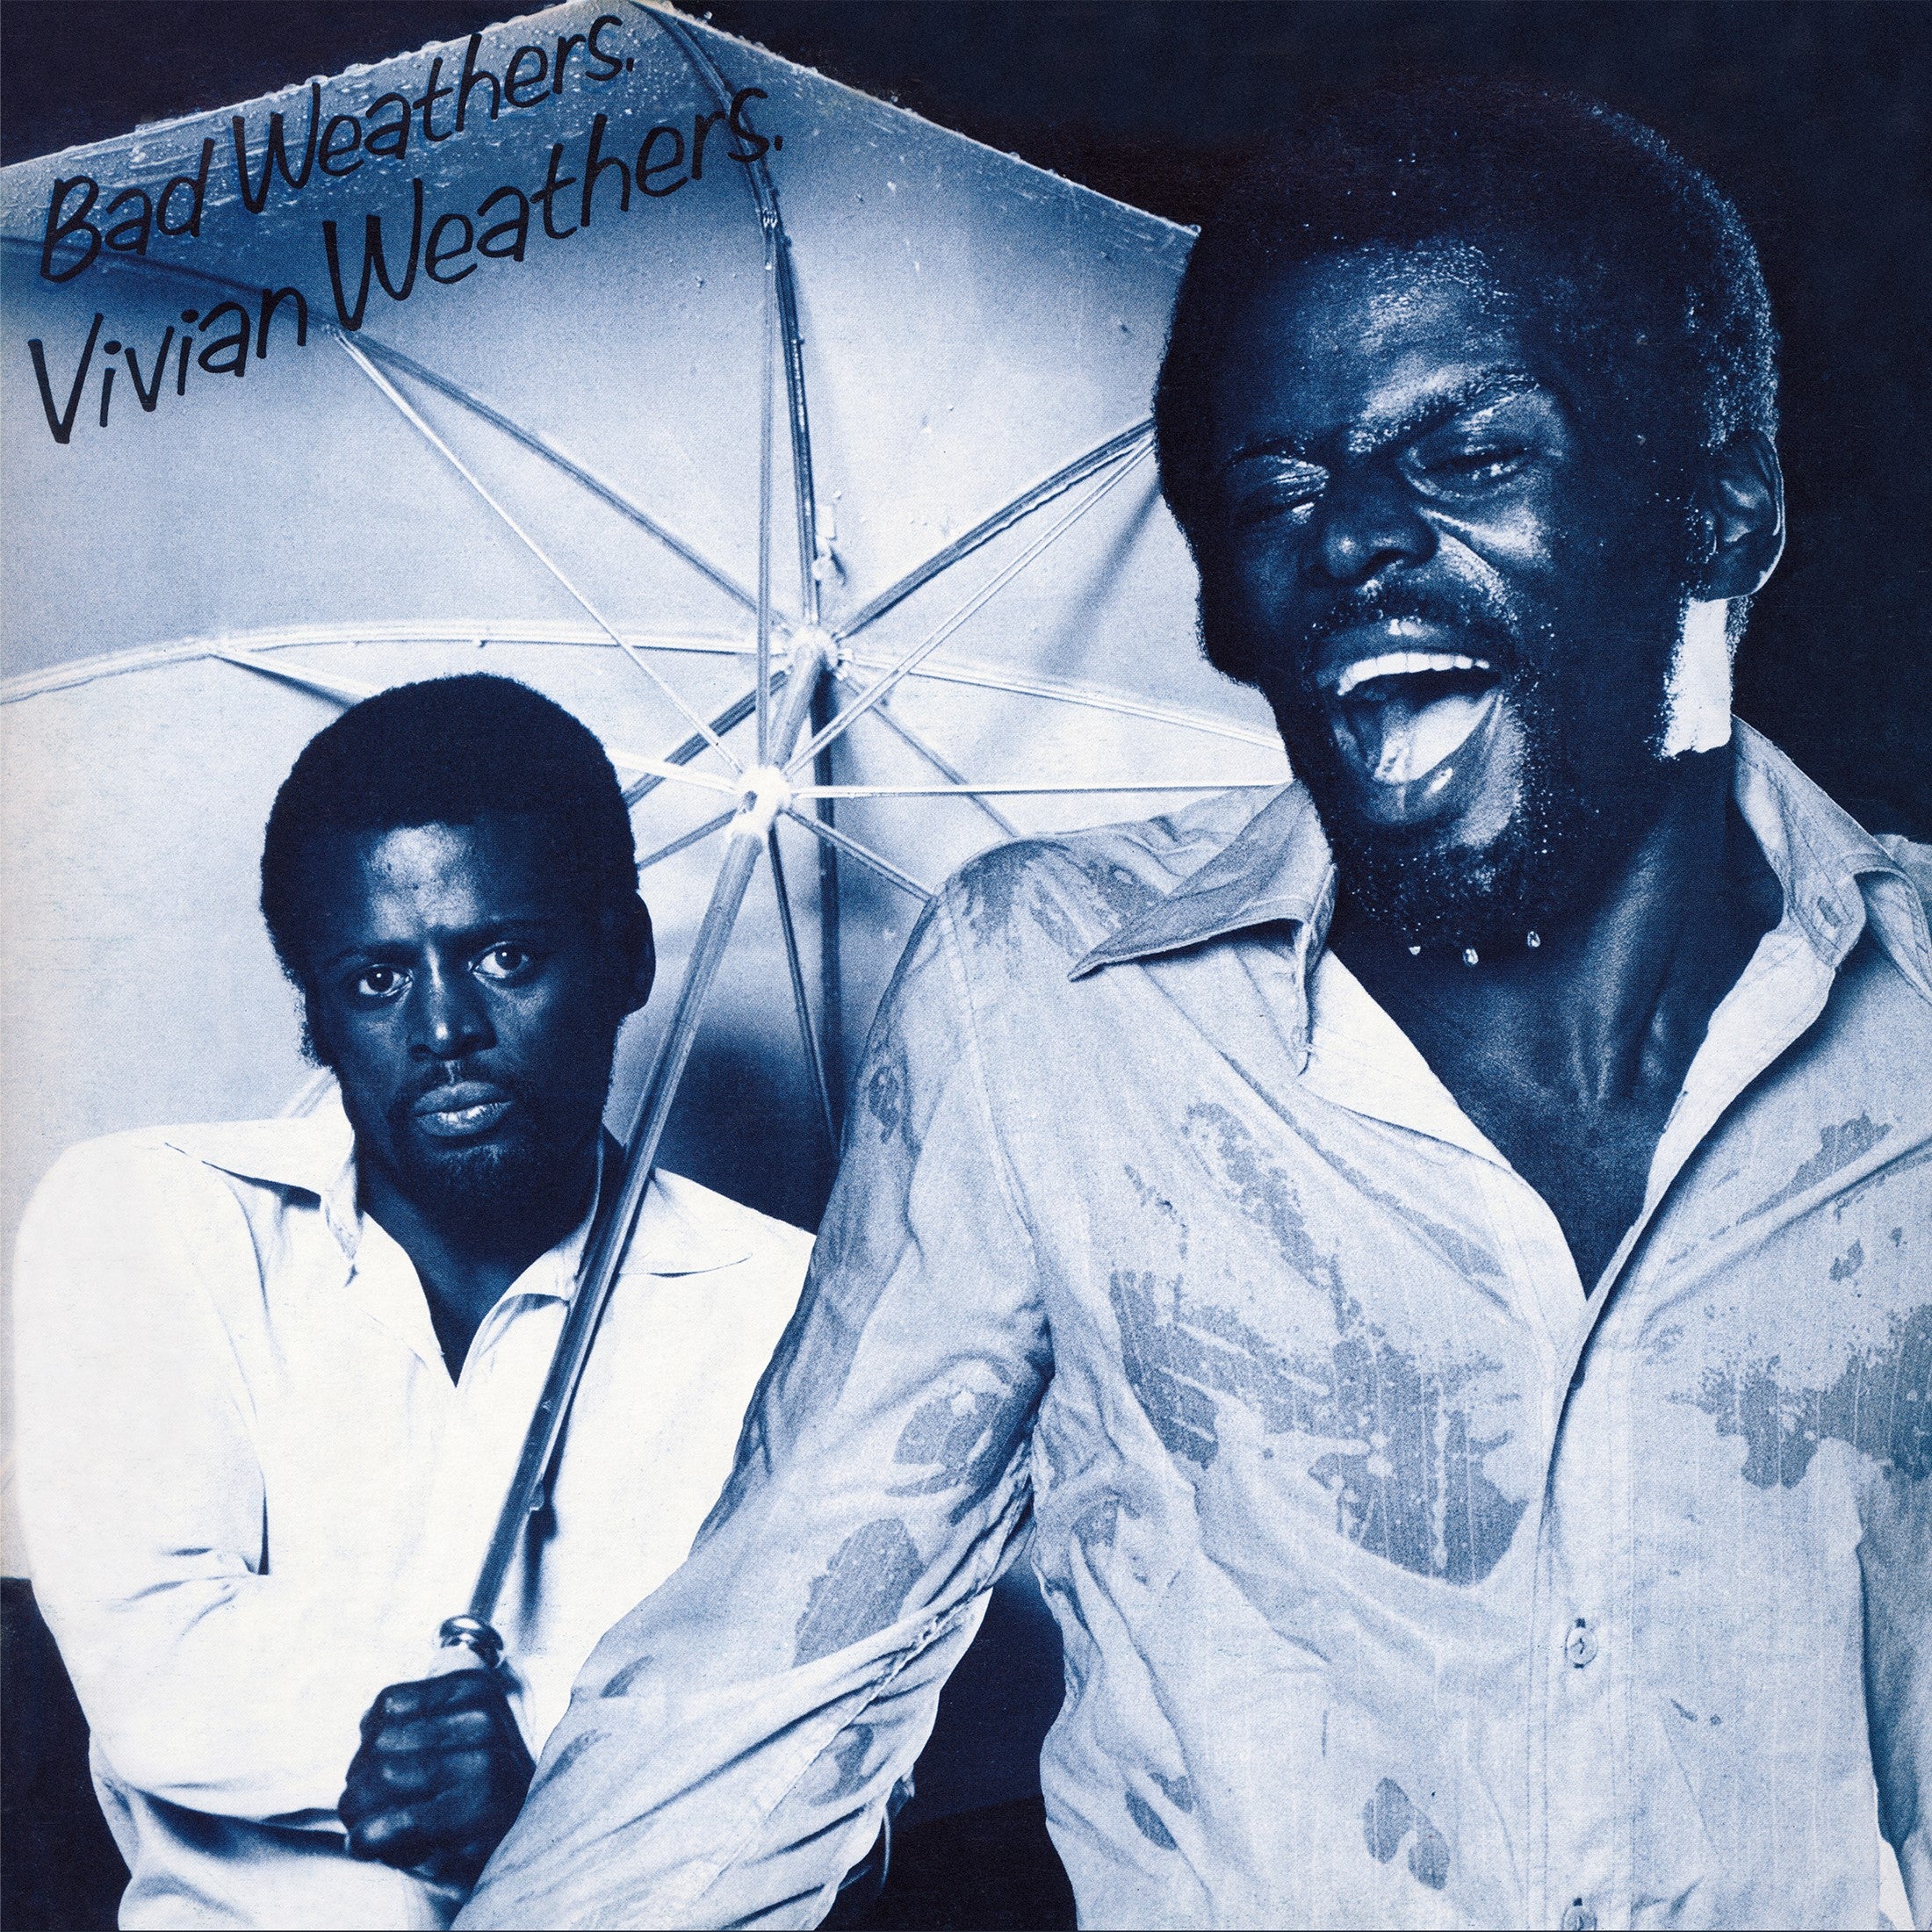 Vivian Weathers - Bad Weathers: Vinyl LP